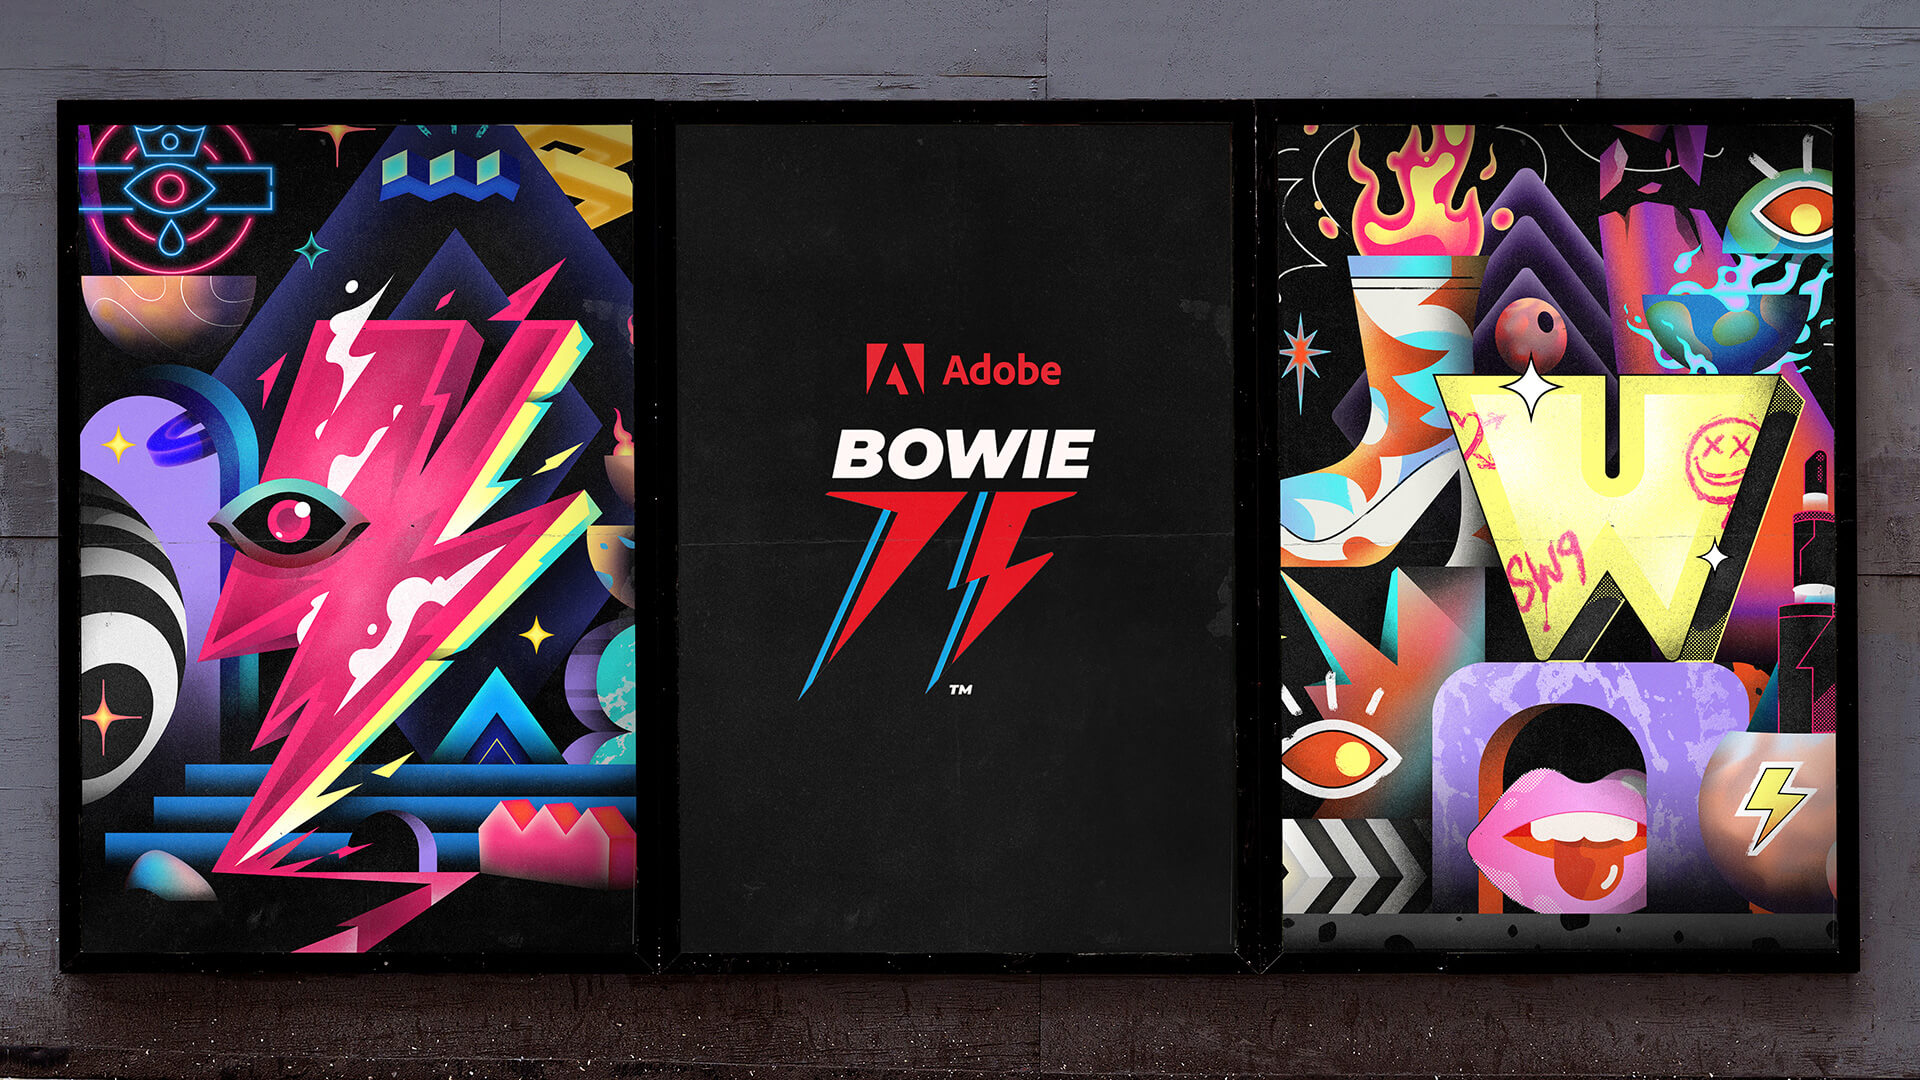 Adobe x Bowie